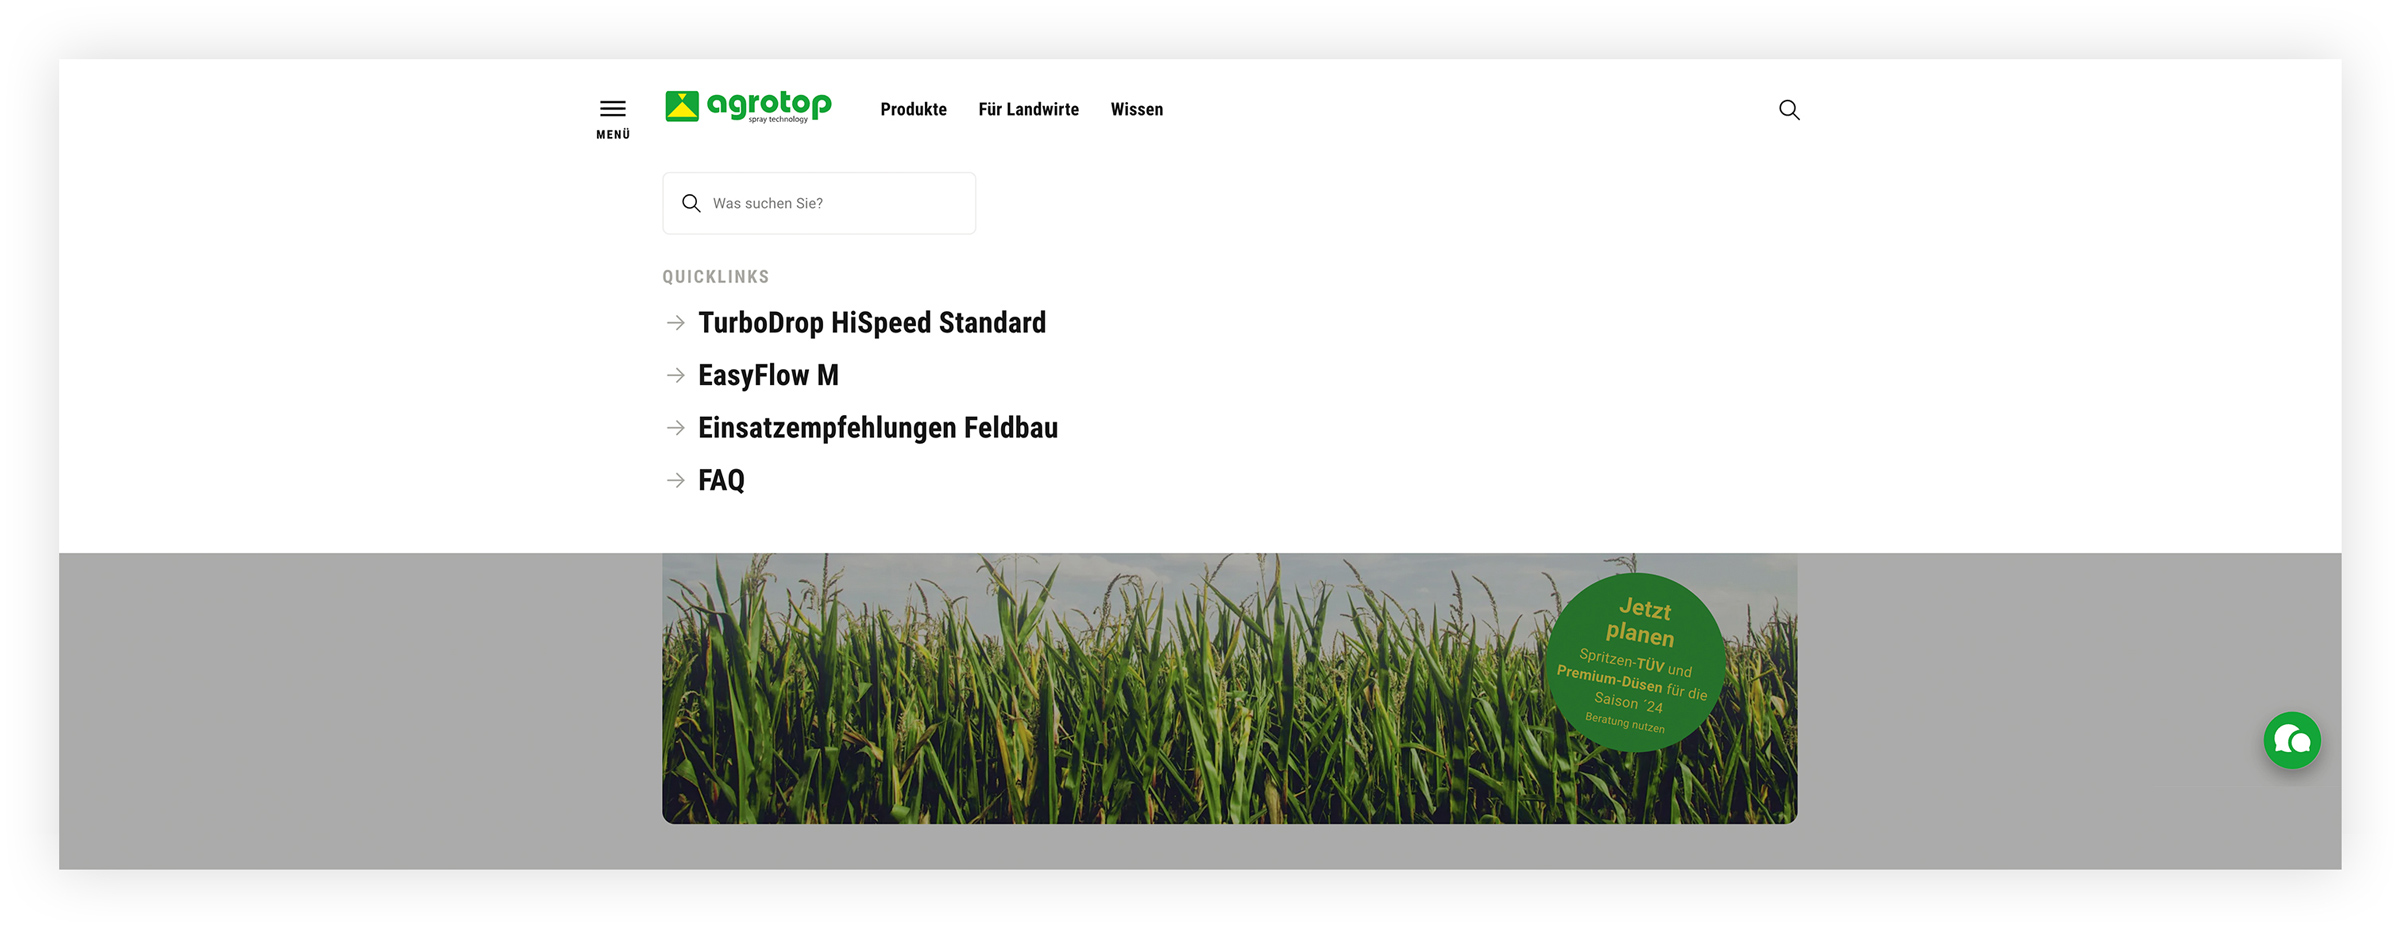 agrotop Website